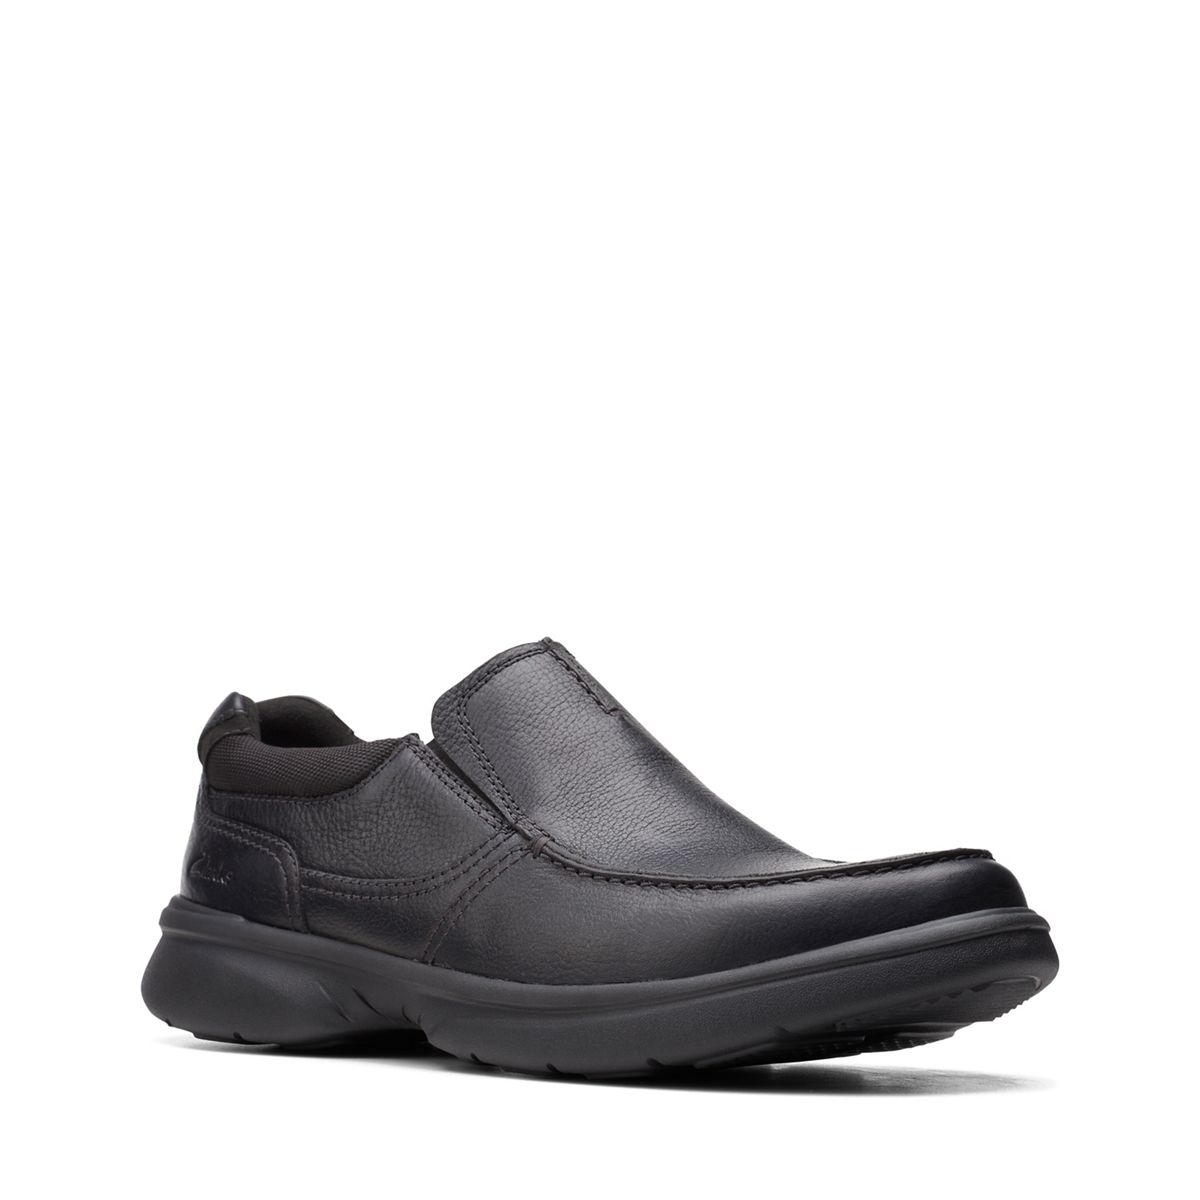 fødselsdag Sæt tøj væk mad Bradley Free Black Tumbled Leather - Clarks Canada Official Site | Clarks  Shoes